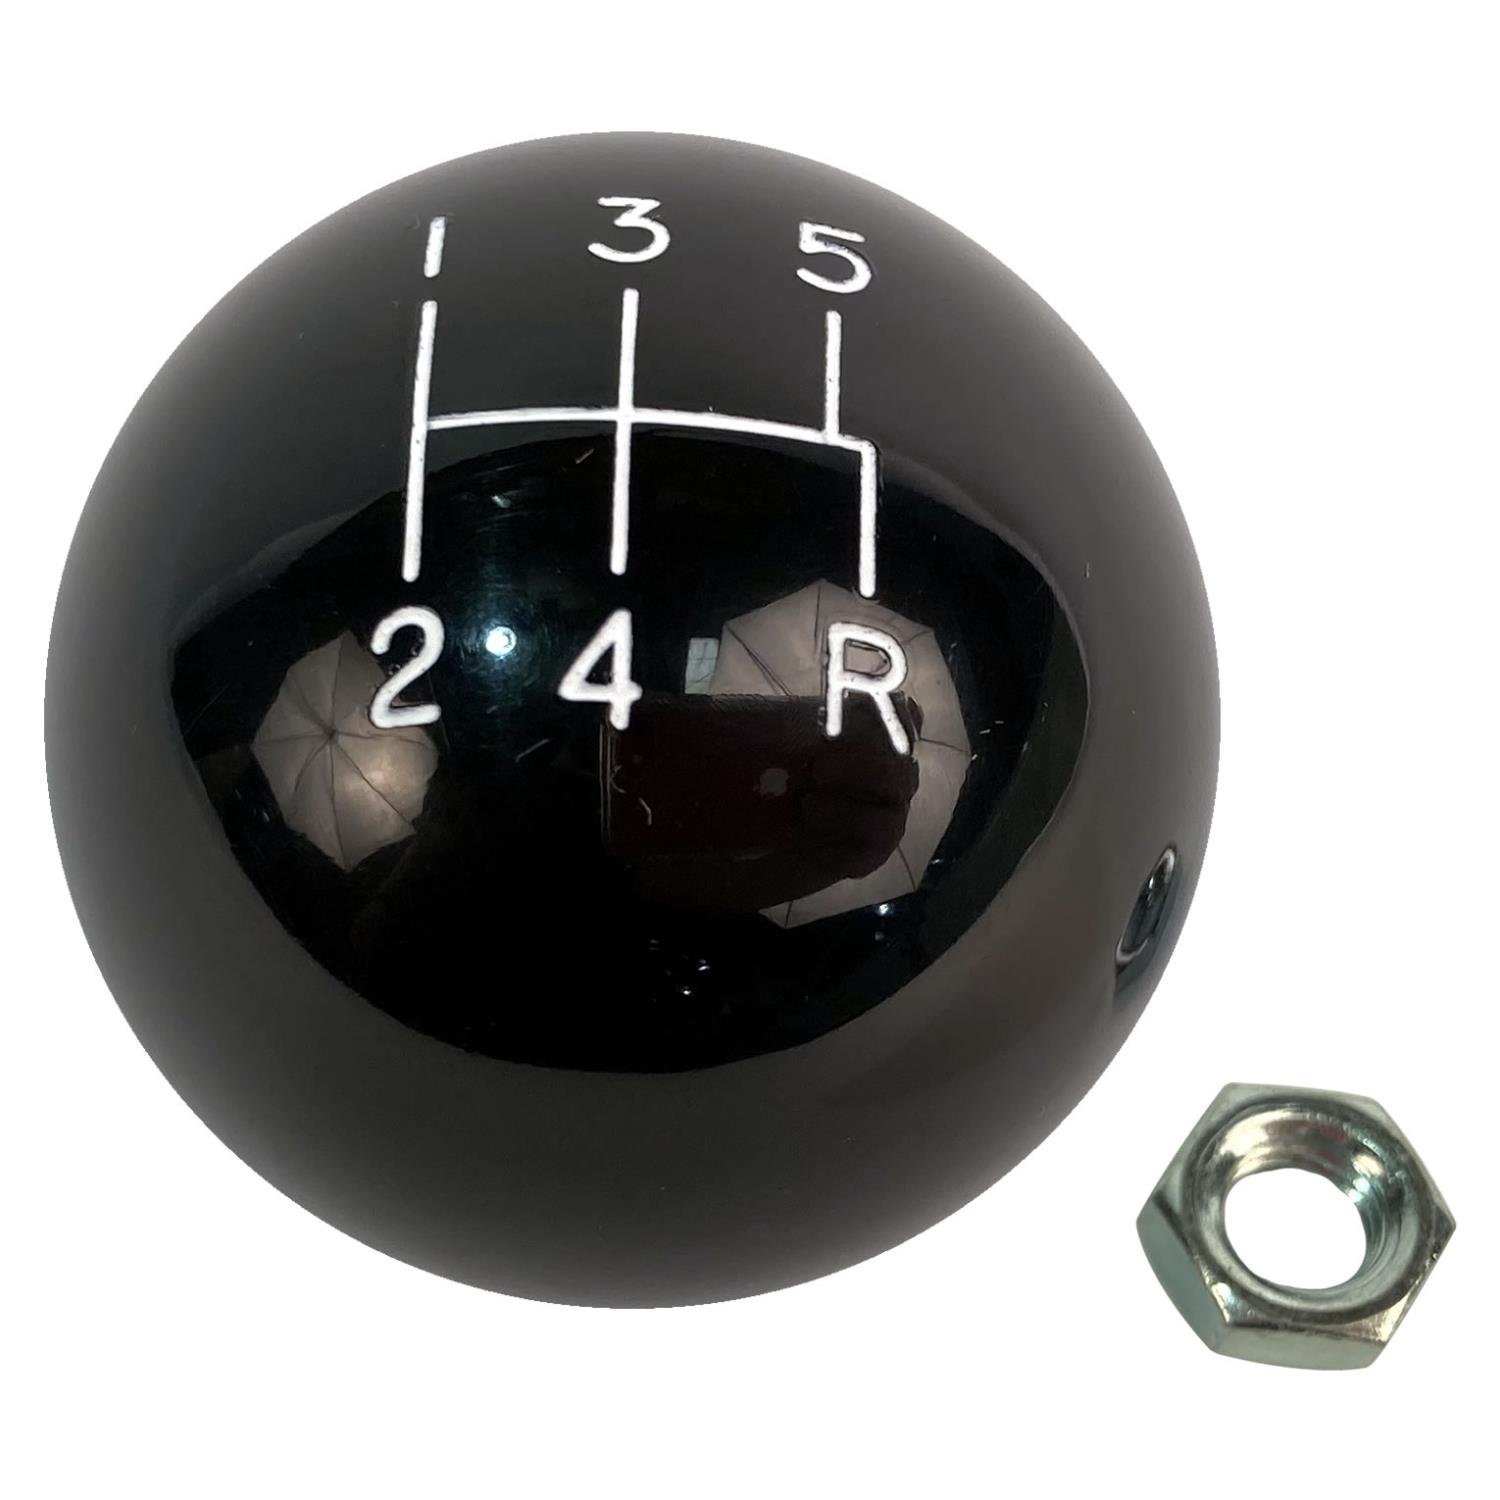 Classic style 5 speed shift knob black 3/8"-16 thread w/locknut